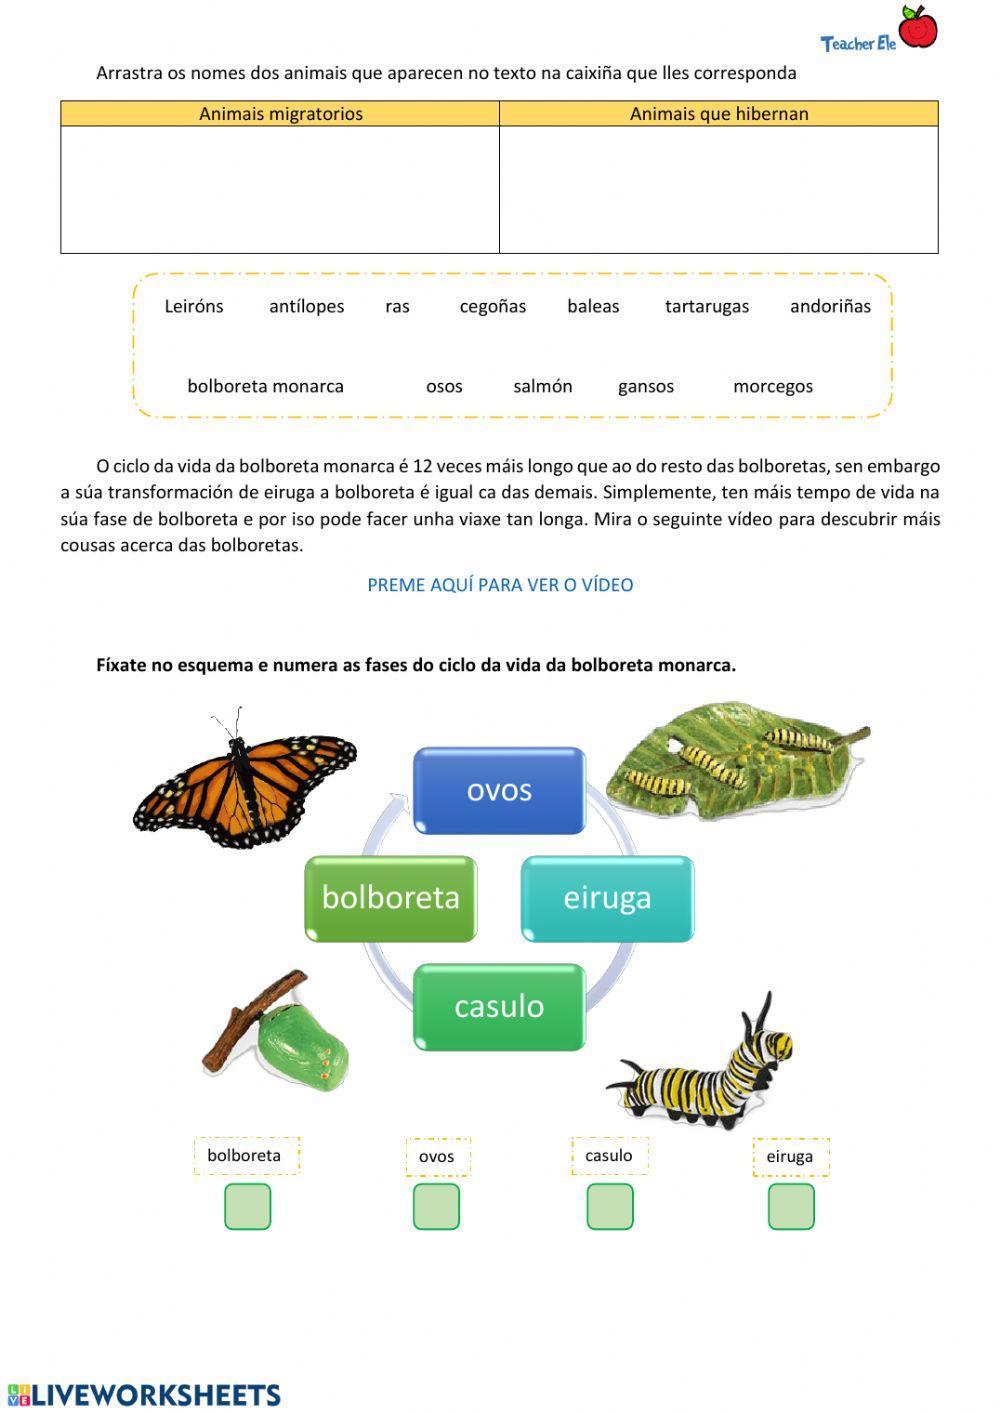 Hibernación e ciclo da vida da bolboreta monarca